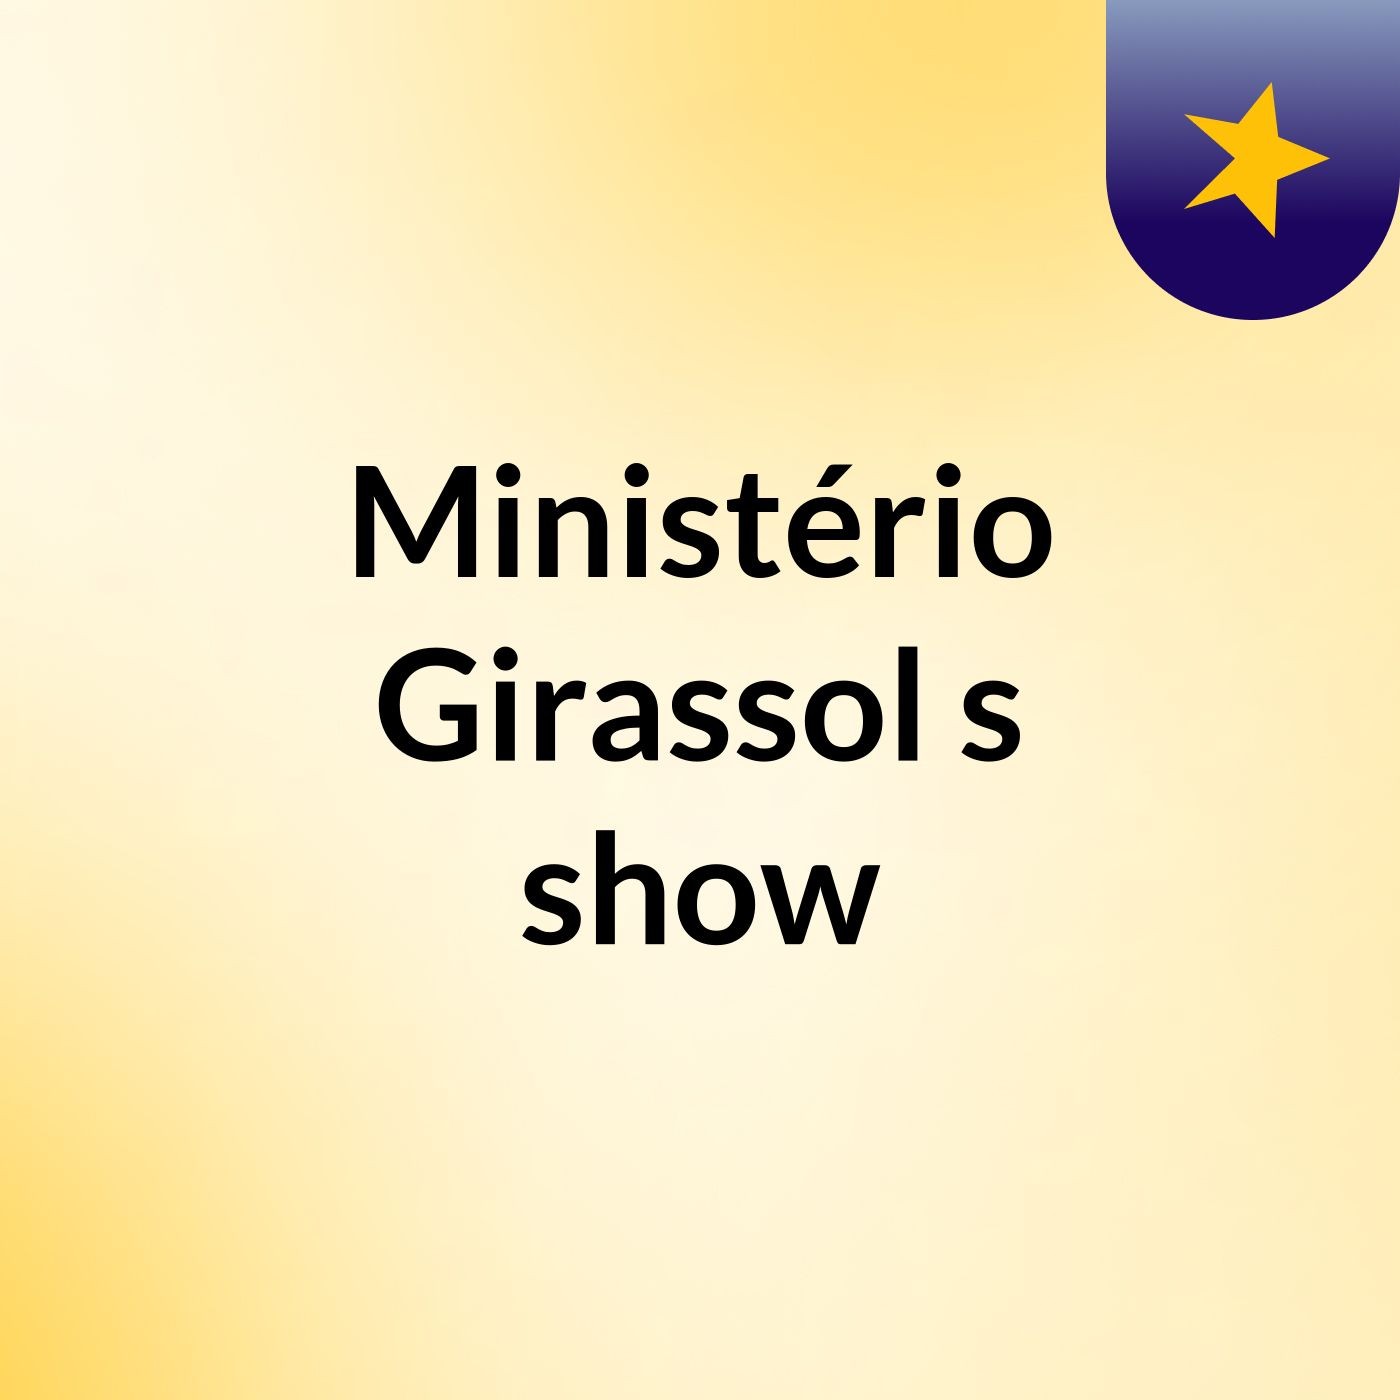 Ministério Girassol's show